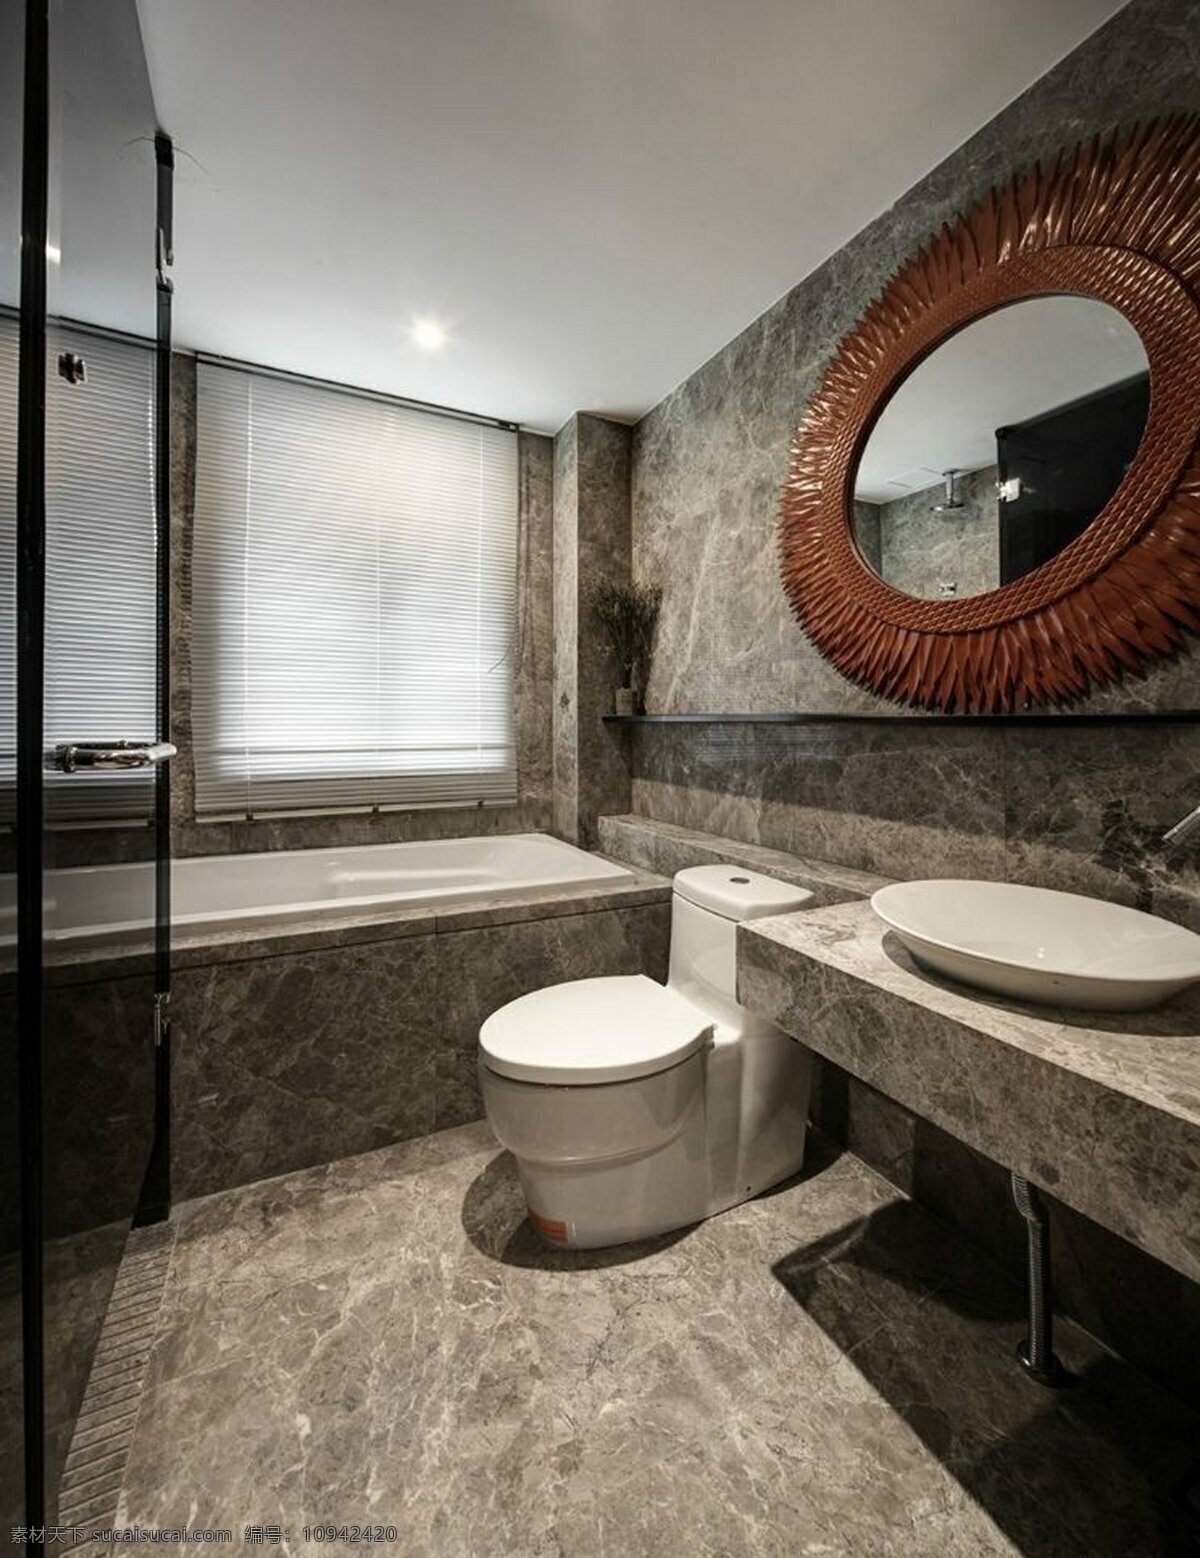 现代 简约 洗手间 圆 镜子 室内装修 效果图 圆镜子 洗手台 大理石地板 浴缸